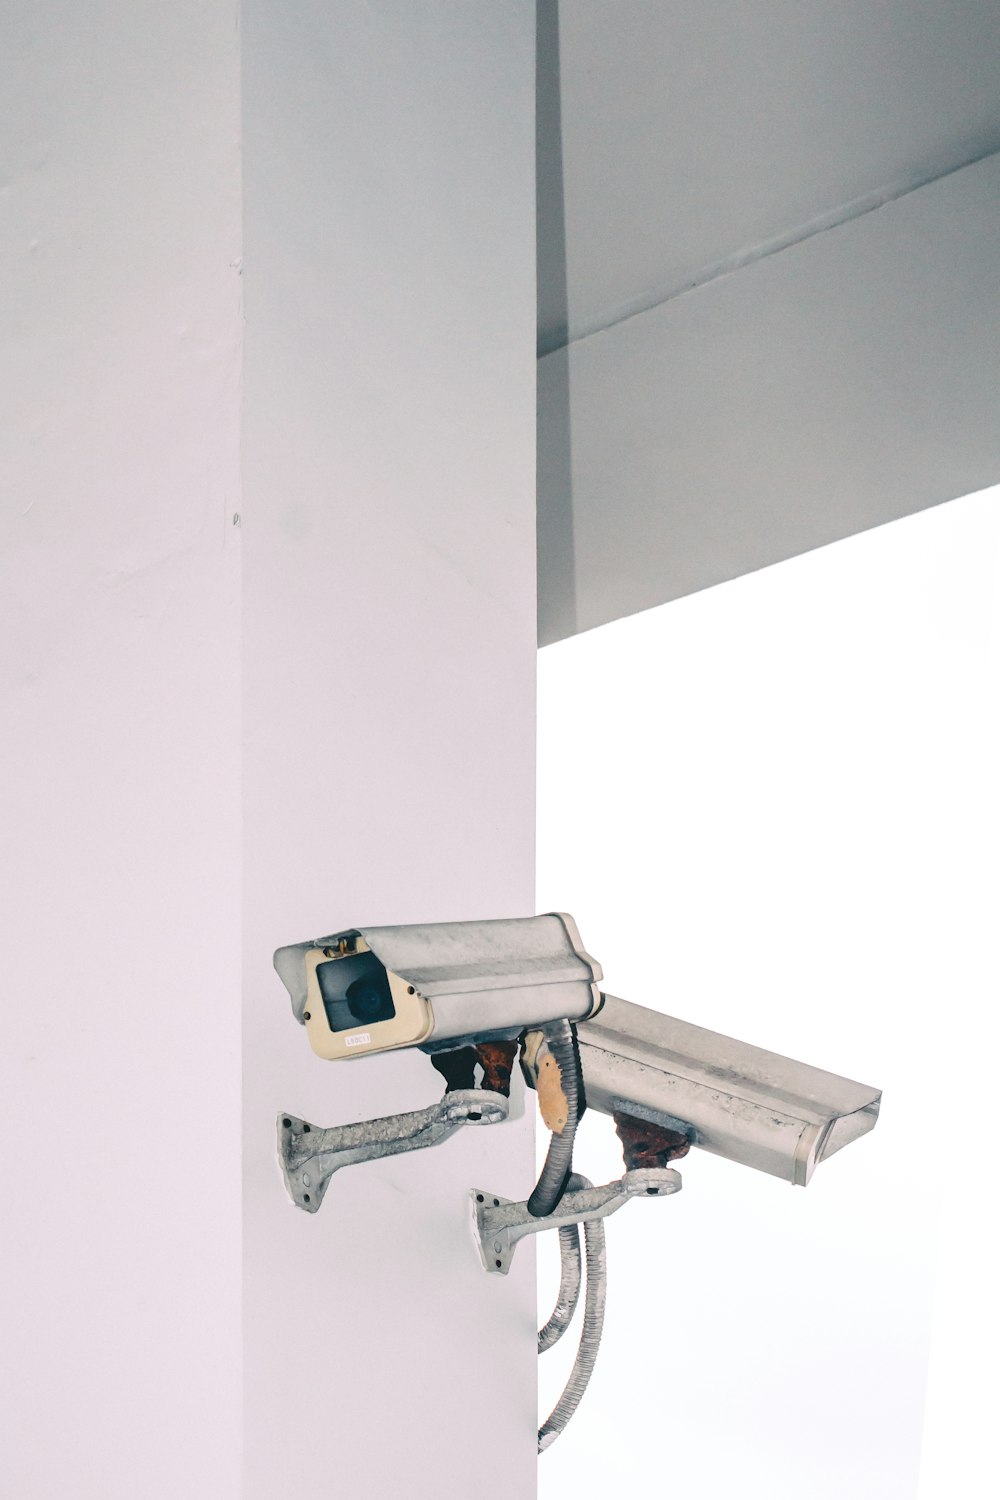 Überwachungskamera mit zwei Kugeln an der Wand befestigt